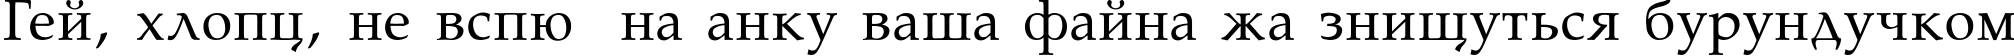 Пример написания шрифтом Palatino-Normal текста на украинском